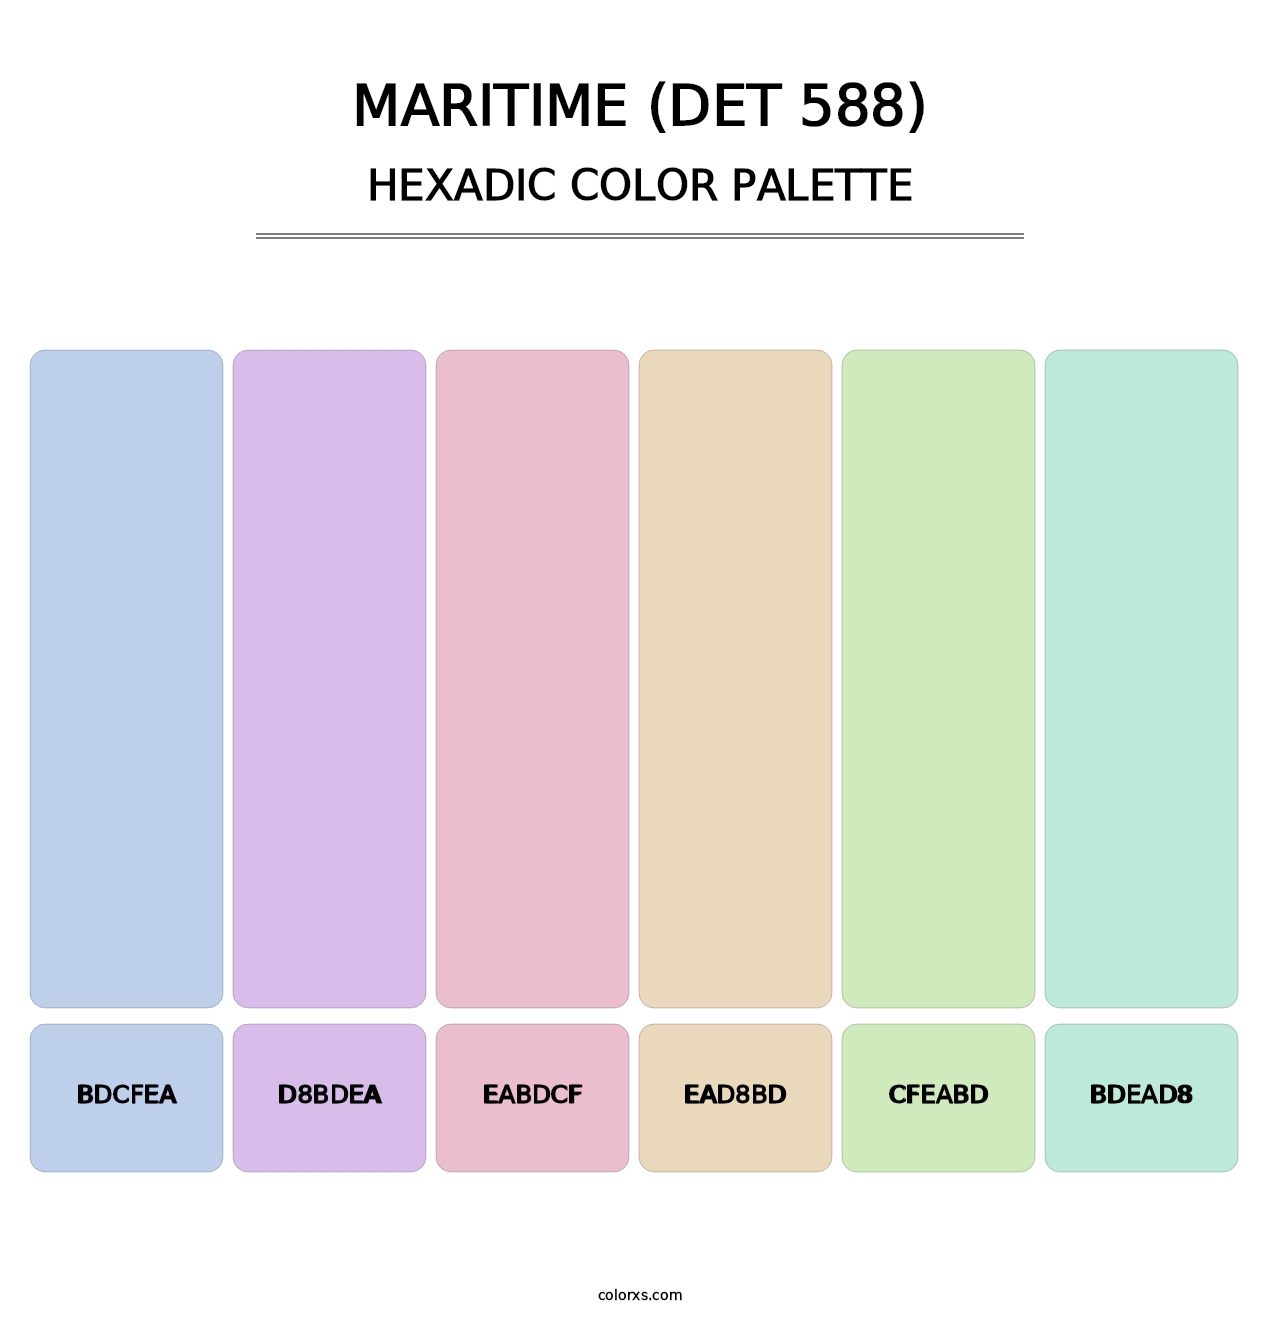 Maritime (DET 588) - Hexadic Color Palette